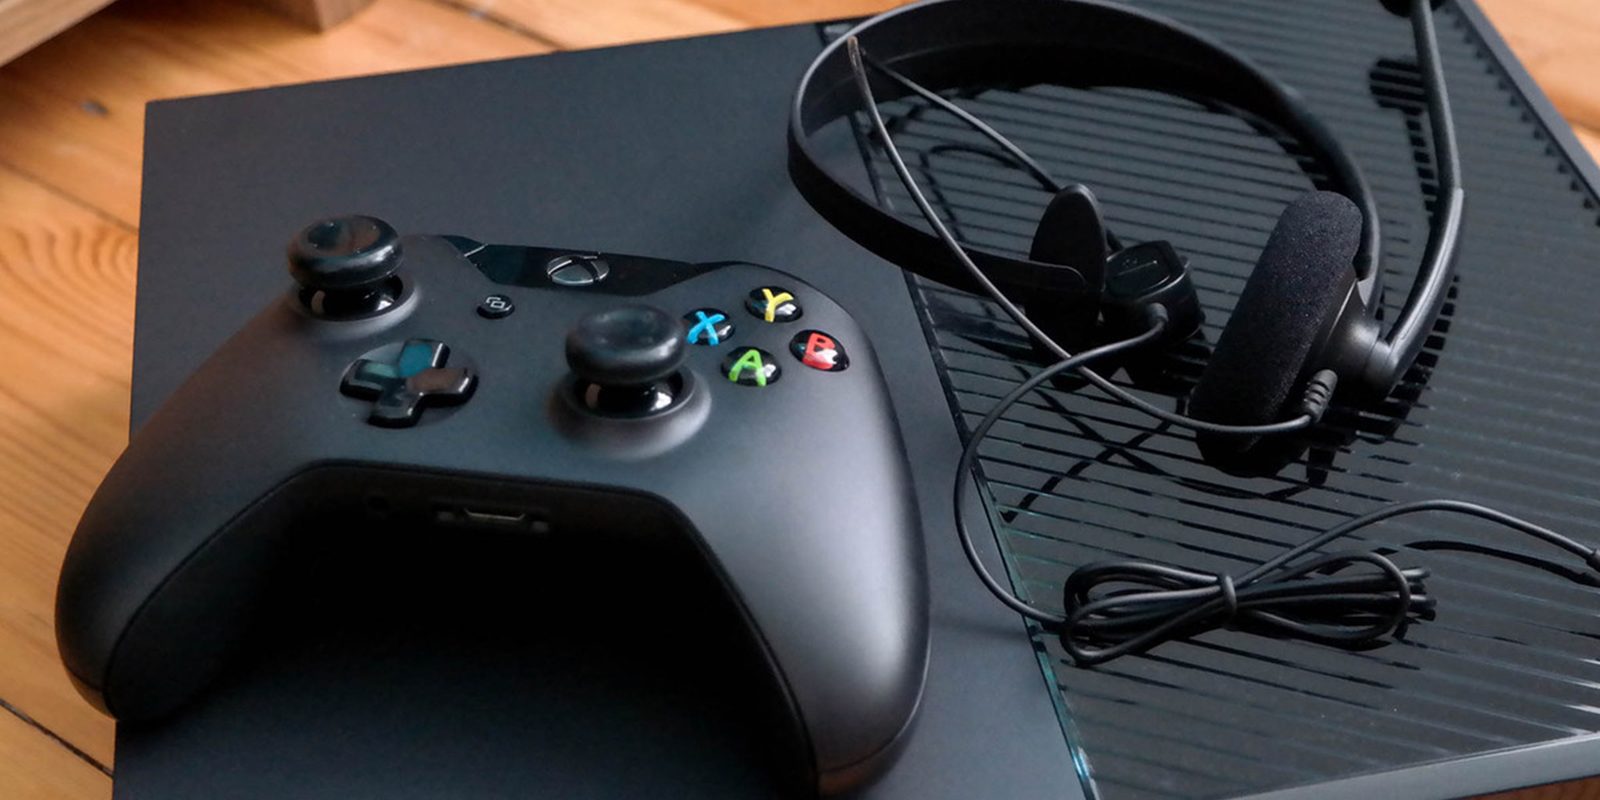 Comprobado: Xbox One S es más rápida y mejora el rendimiento respecto a la original